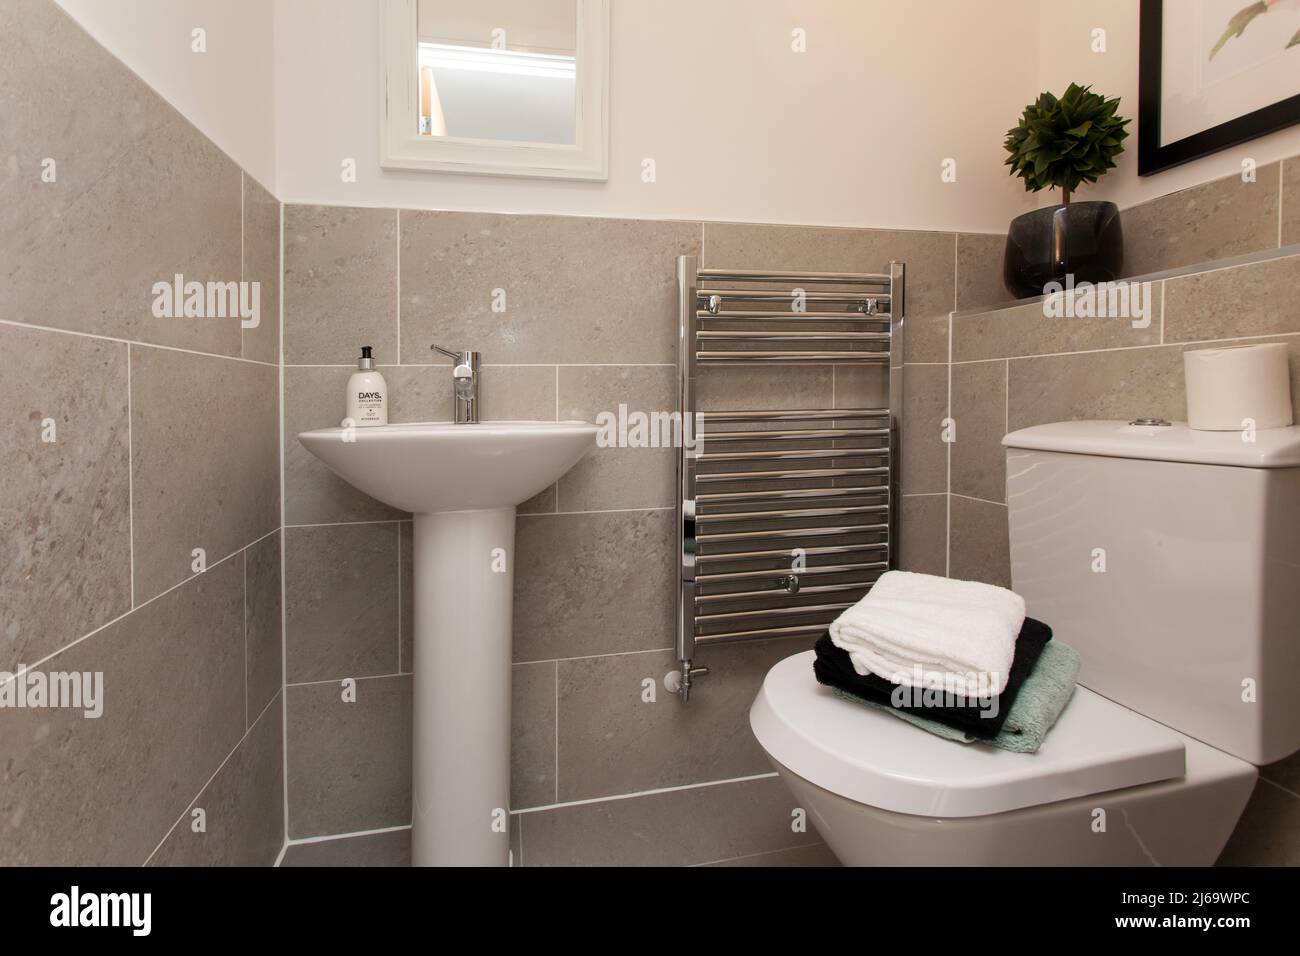 WC y lavabo, baño abajo, casa moderna de nueva construcción, azulejos en colores neutros Foto de stock